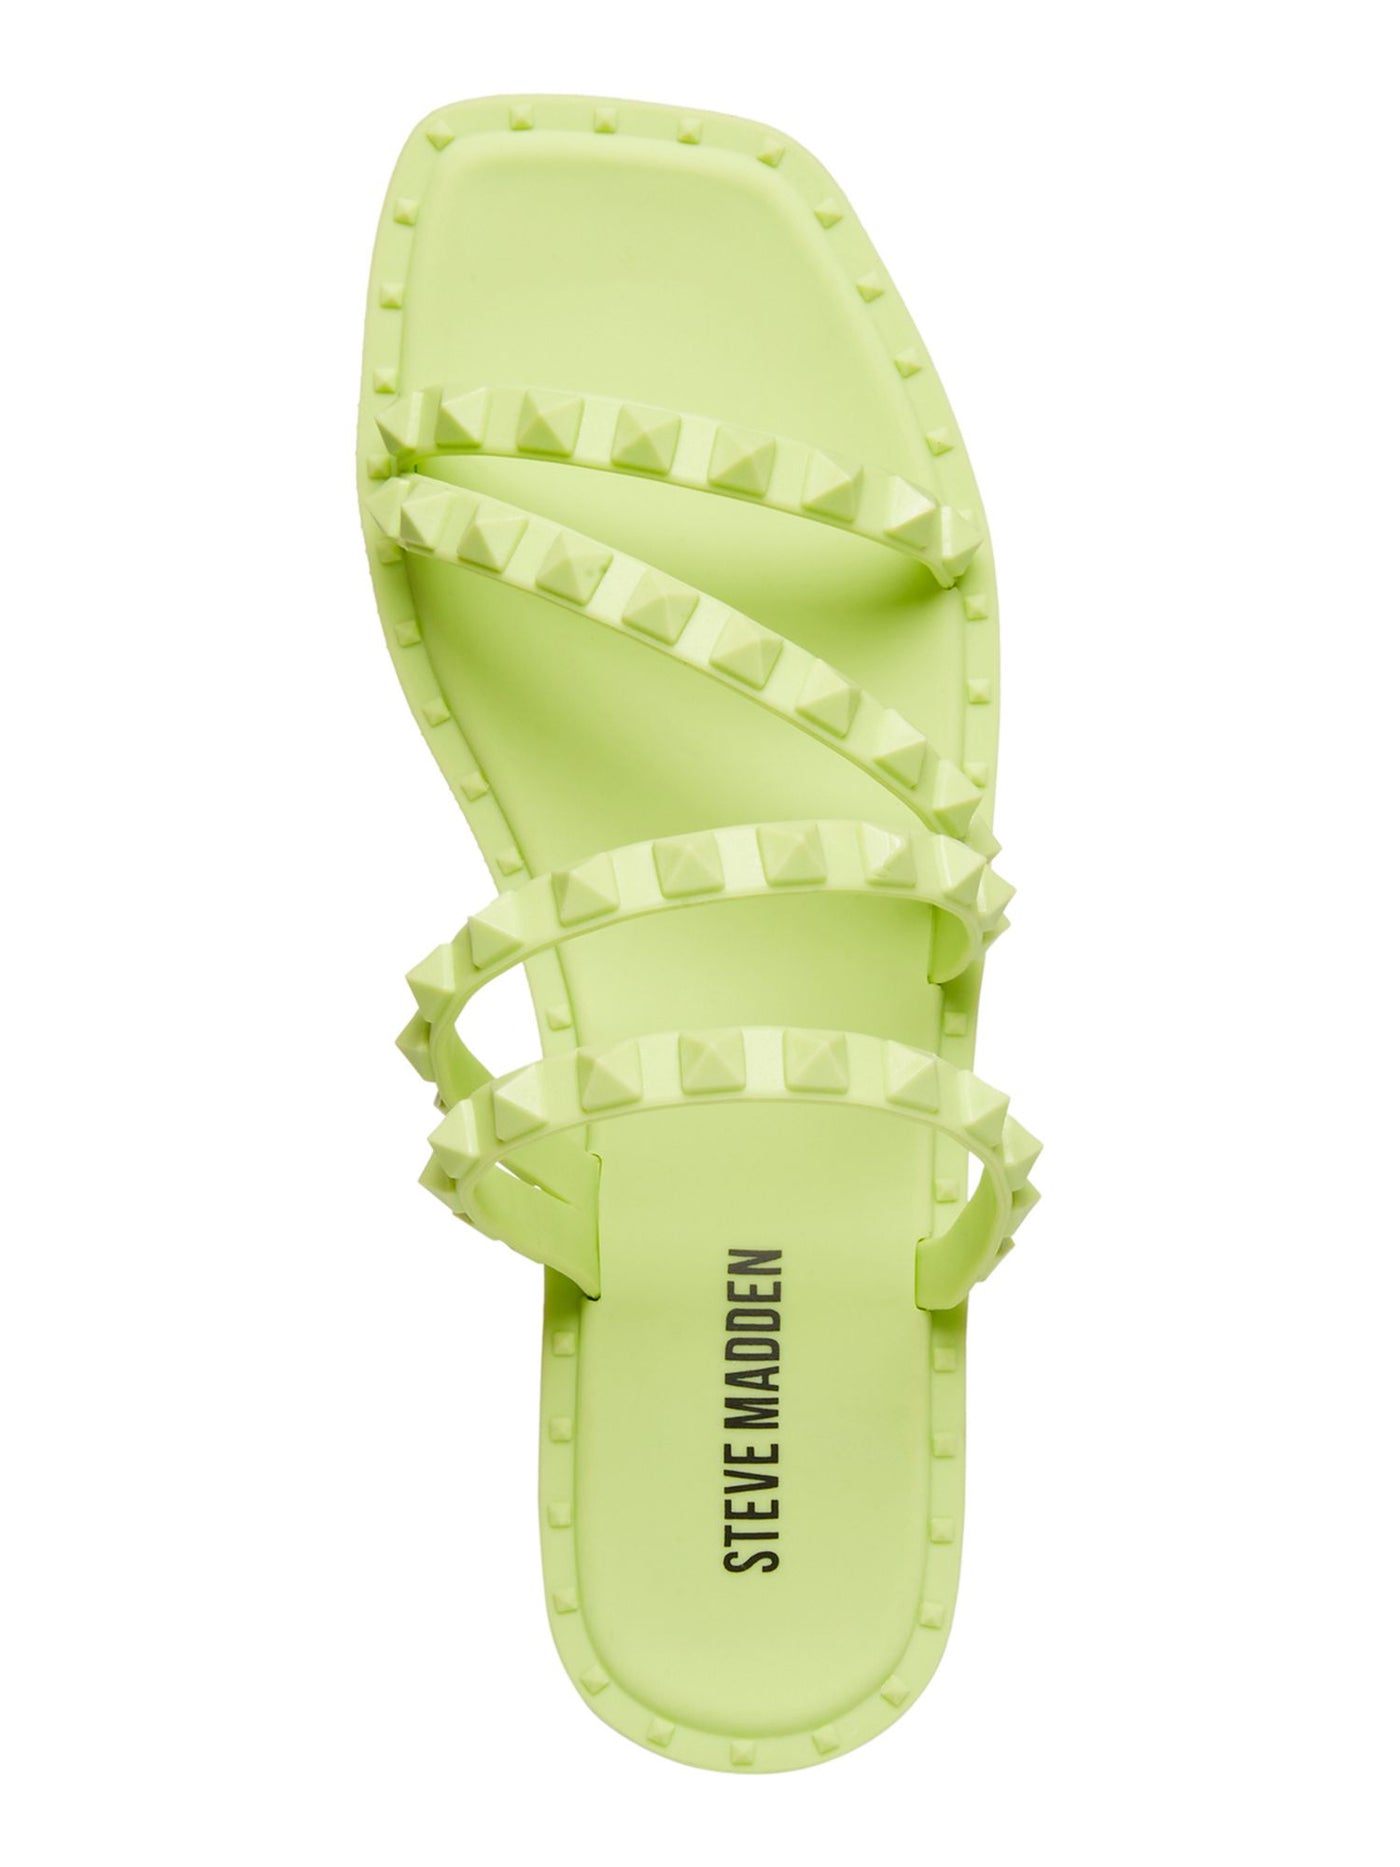 STEVE MADDEN Womens Green Studded Strappy Skyler J Square Toe Block Heel Slip On Slide Sandals Shoes 8 M